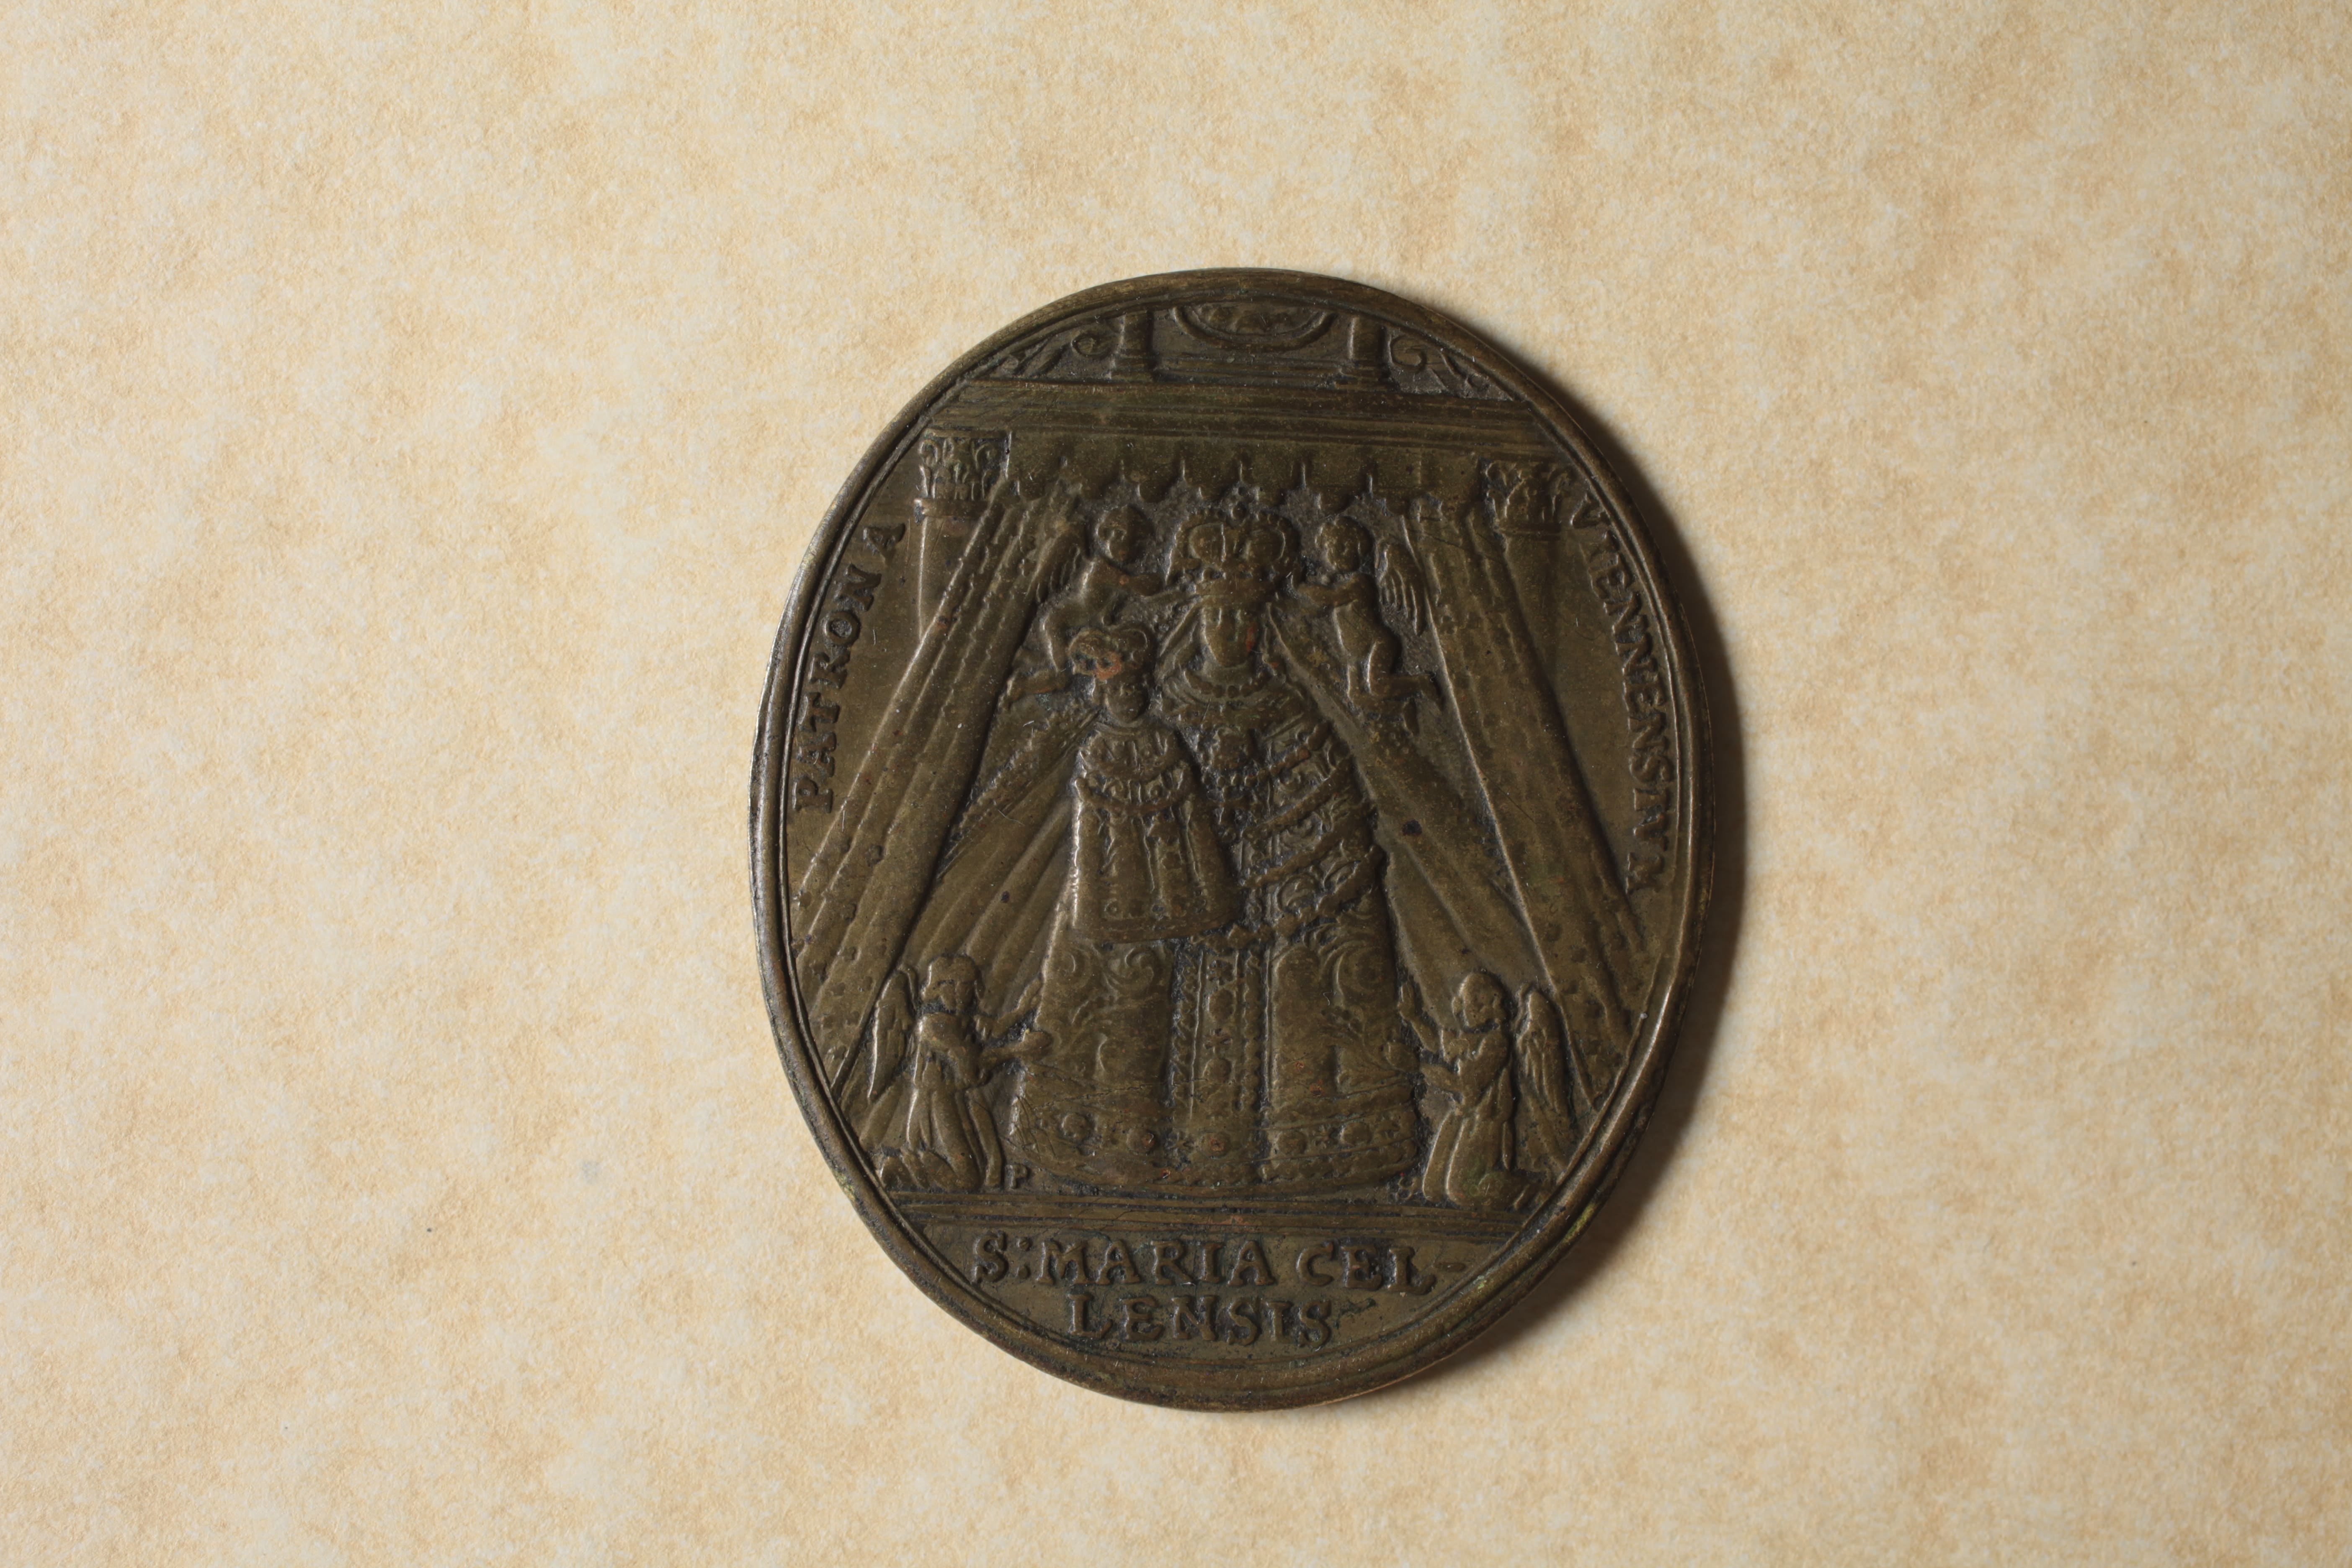 2 - Medaglia per la fine dell'assedio turco, opus Paul Seel, bronzo, mm 44,4 X 37 (Archivio di Stato di Modena, Medagliere, 55), verso.